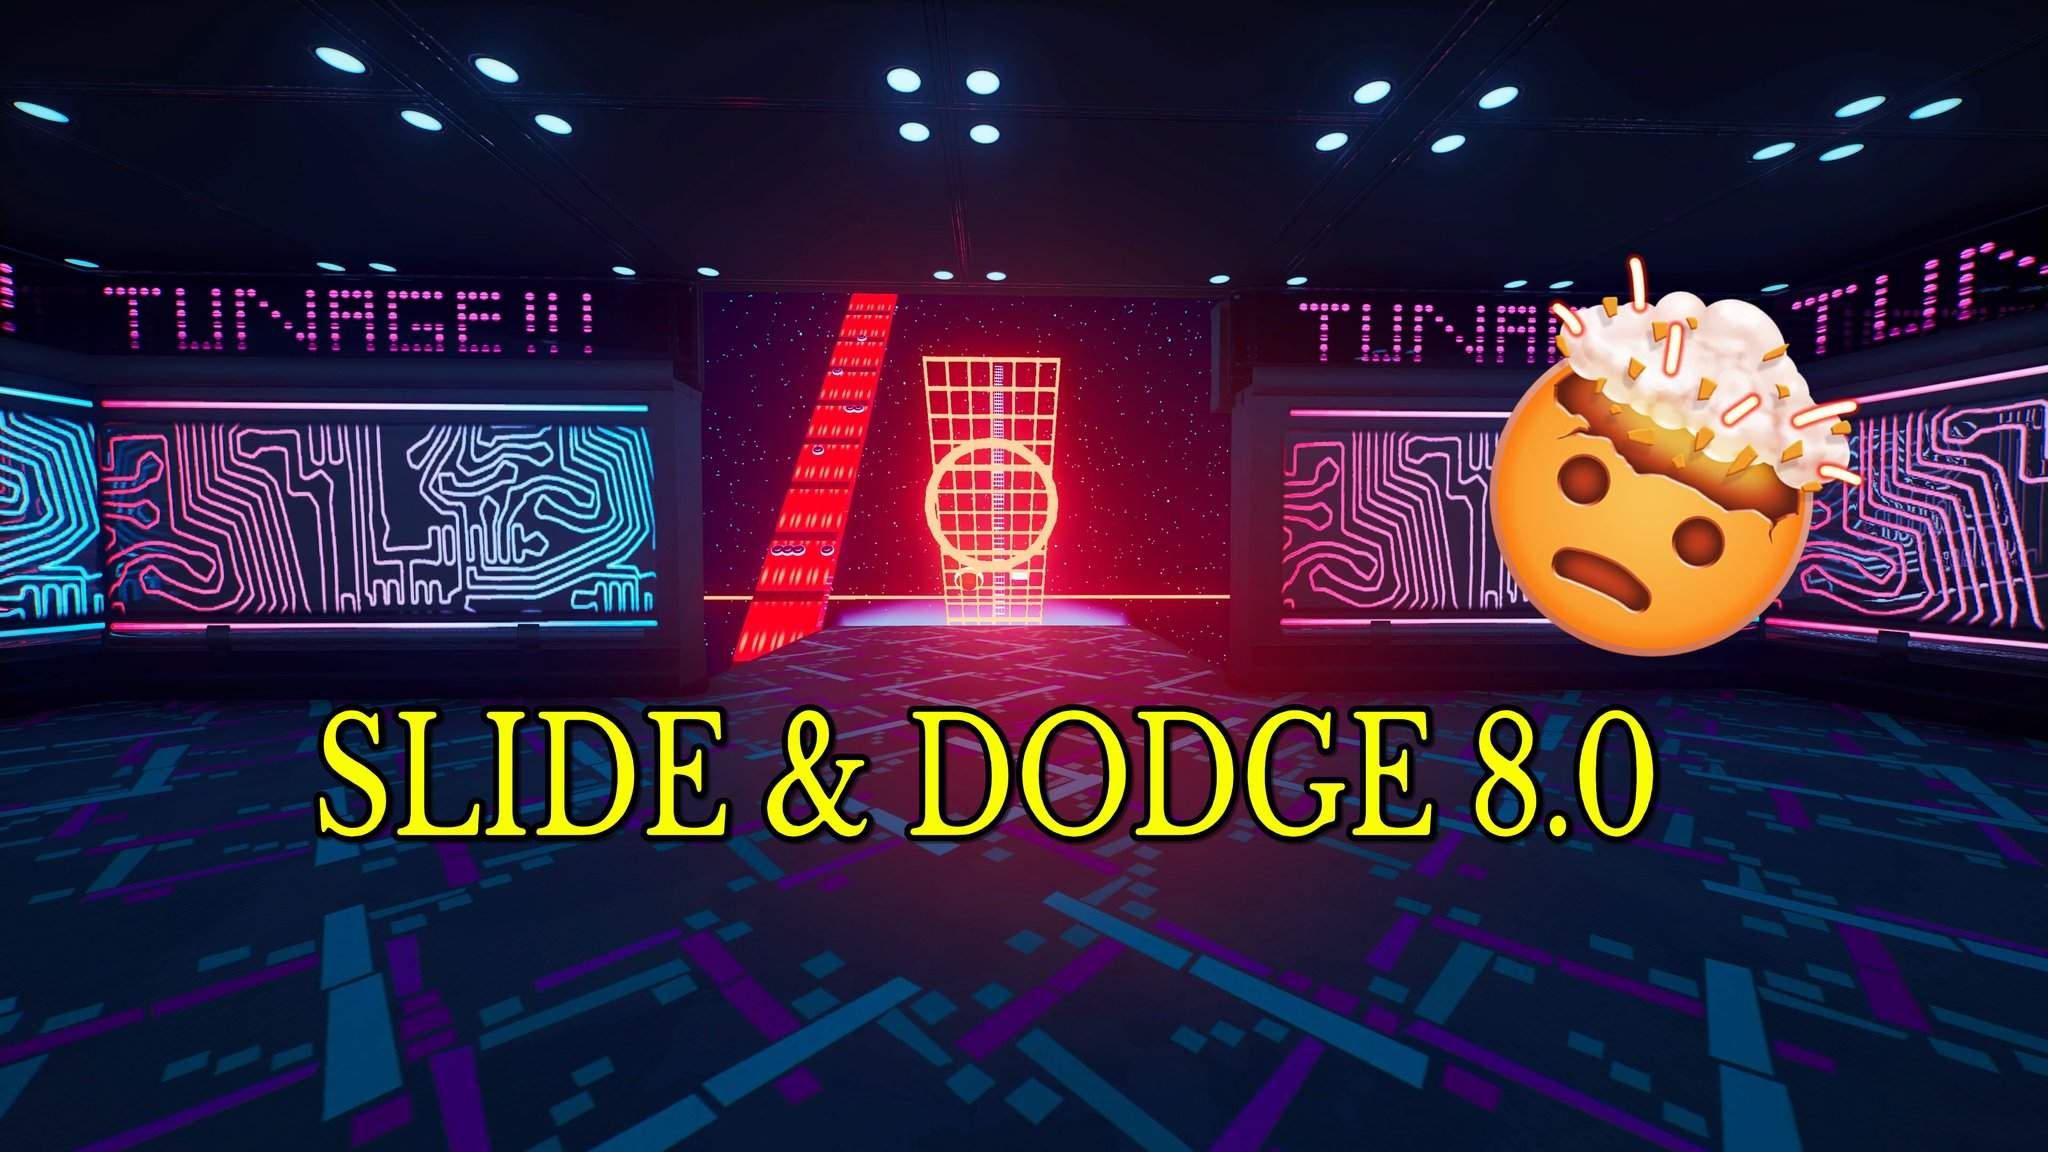 SLIDE & DODGE 8